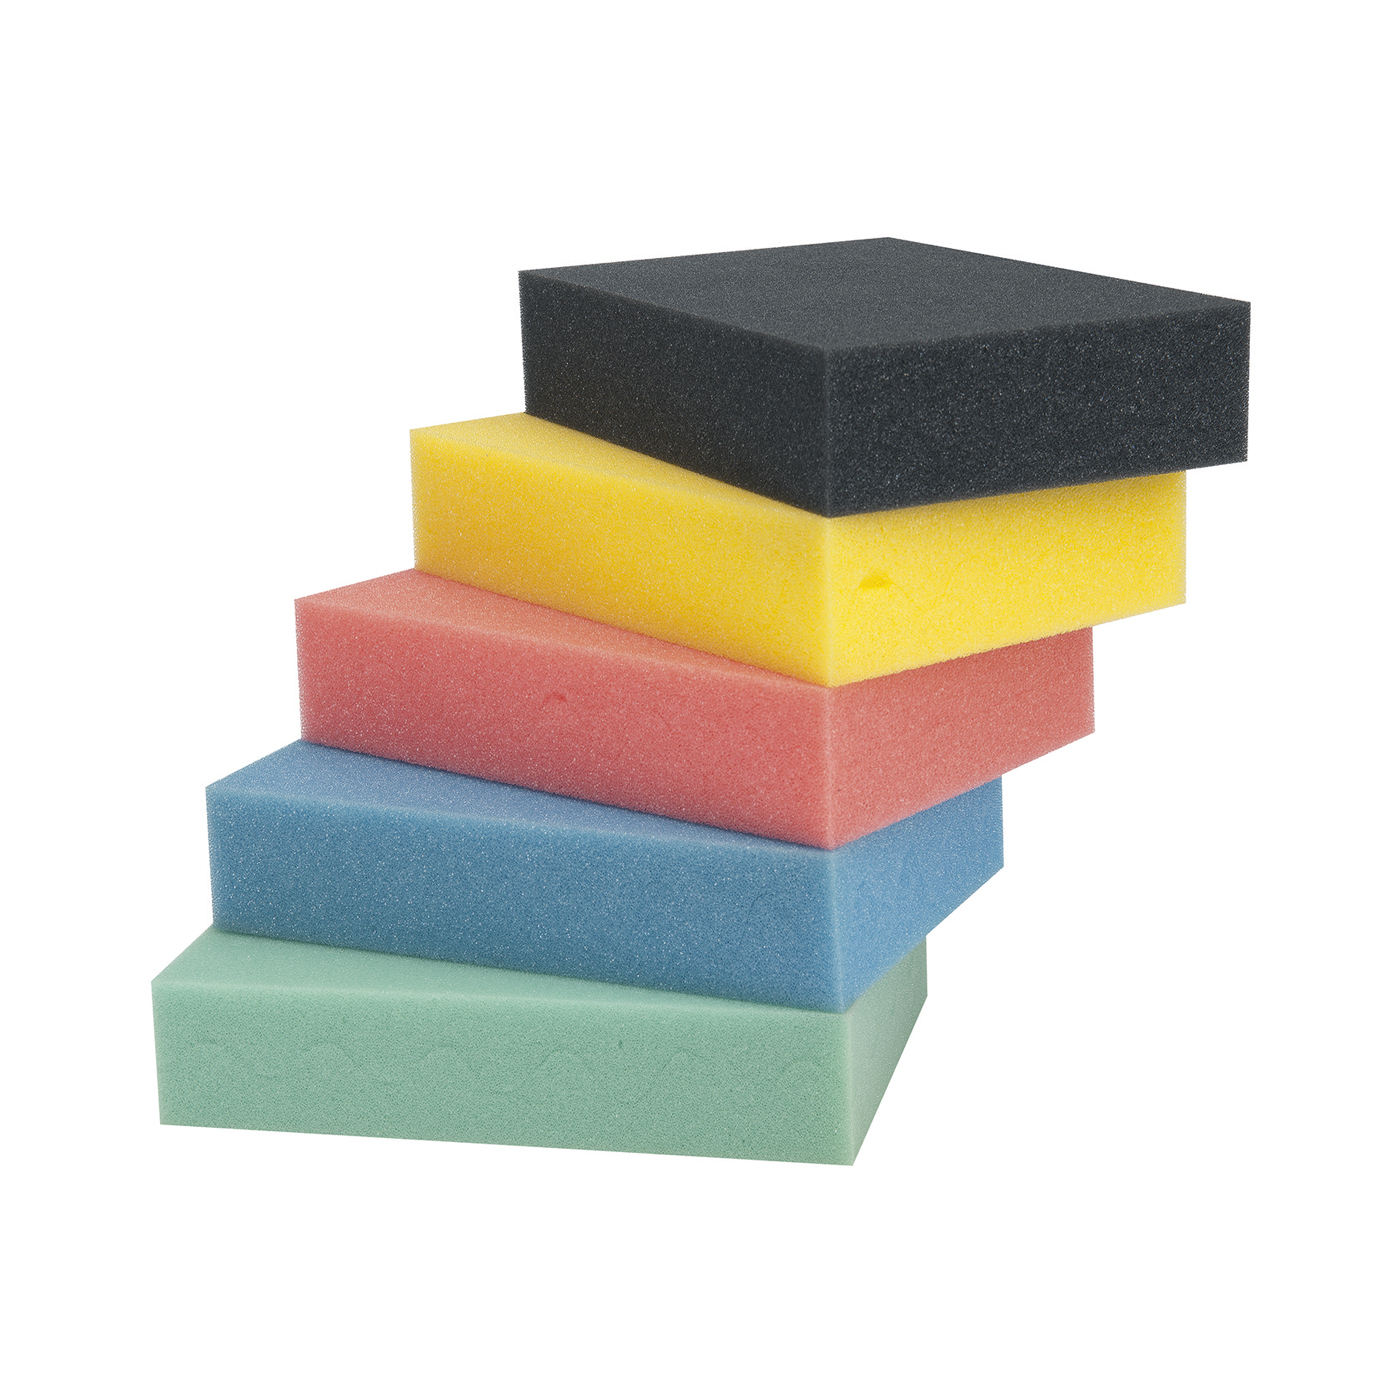 FINO Profiled Foam, for 1.3 l, Anthracite - 2 pieces